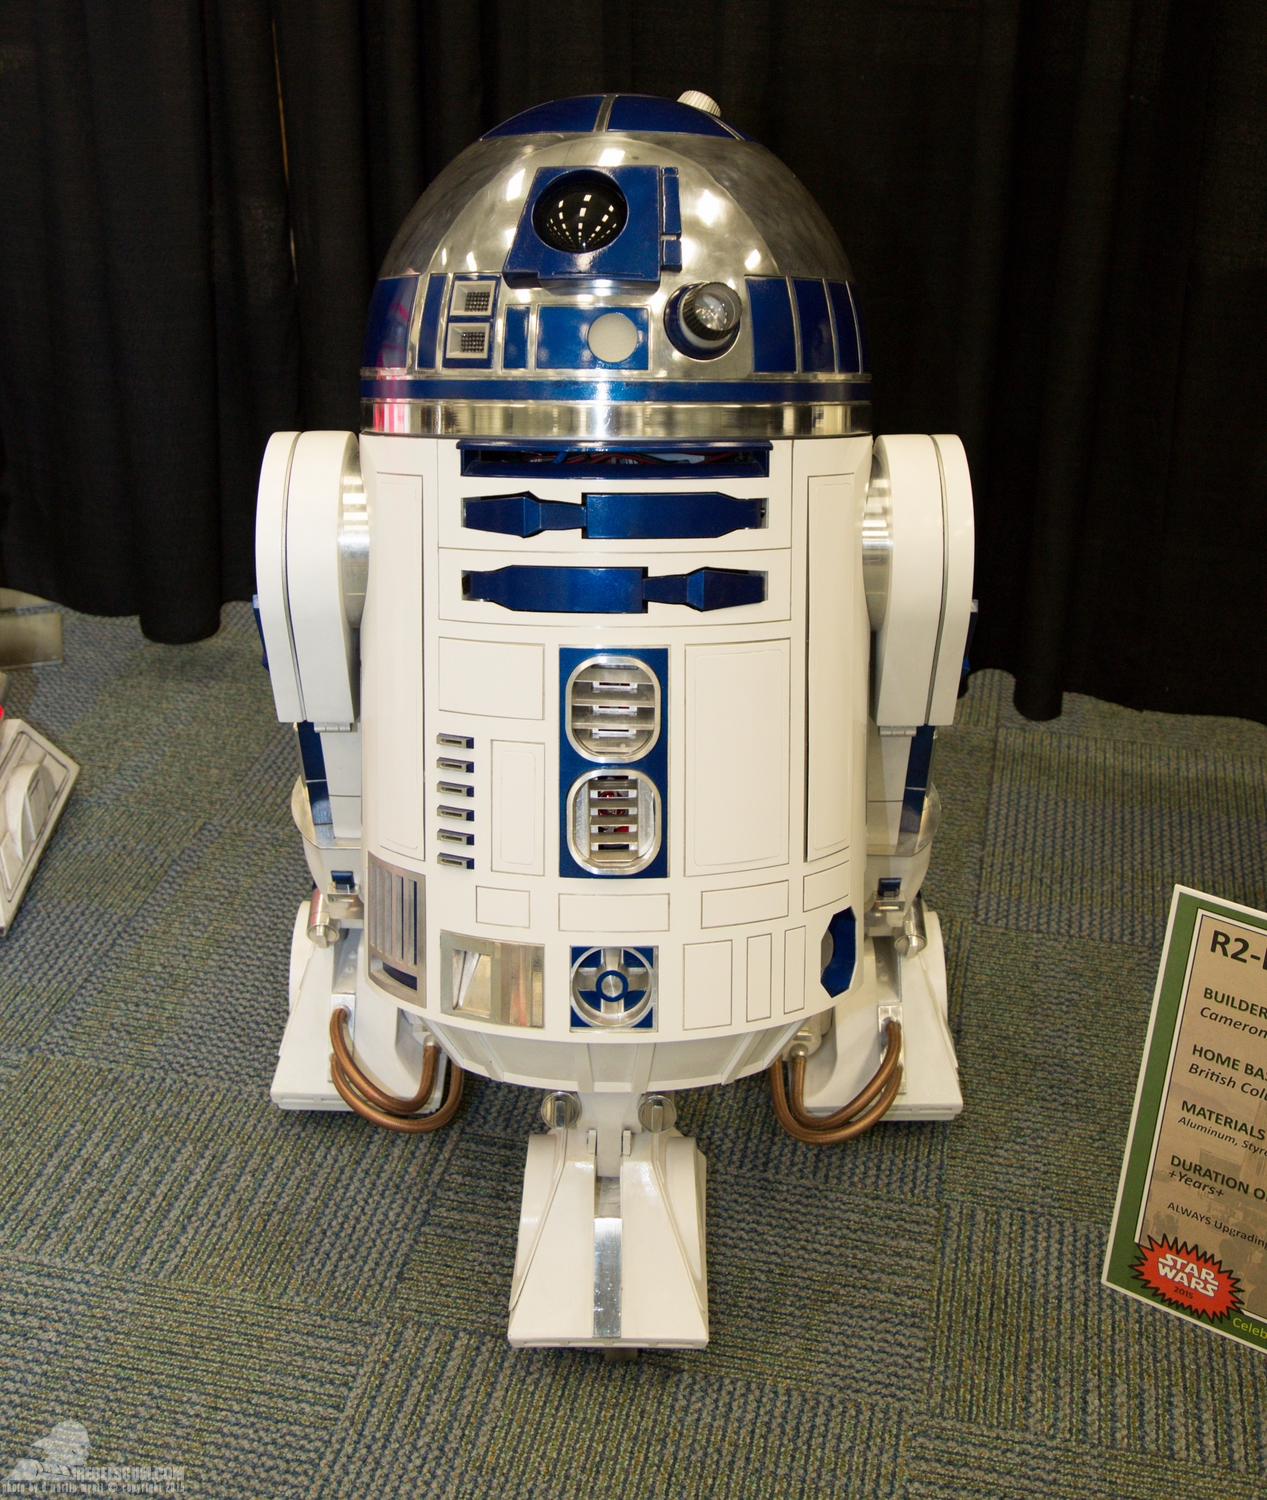 Star-Wars-Celebration-Anaheim-2015-R2-Builders-049.jpg